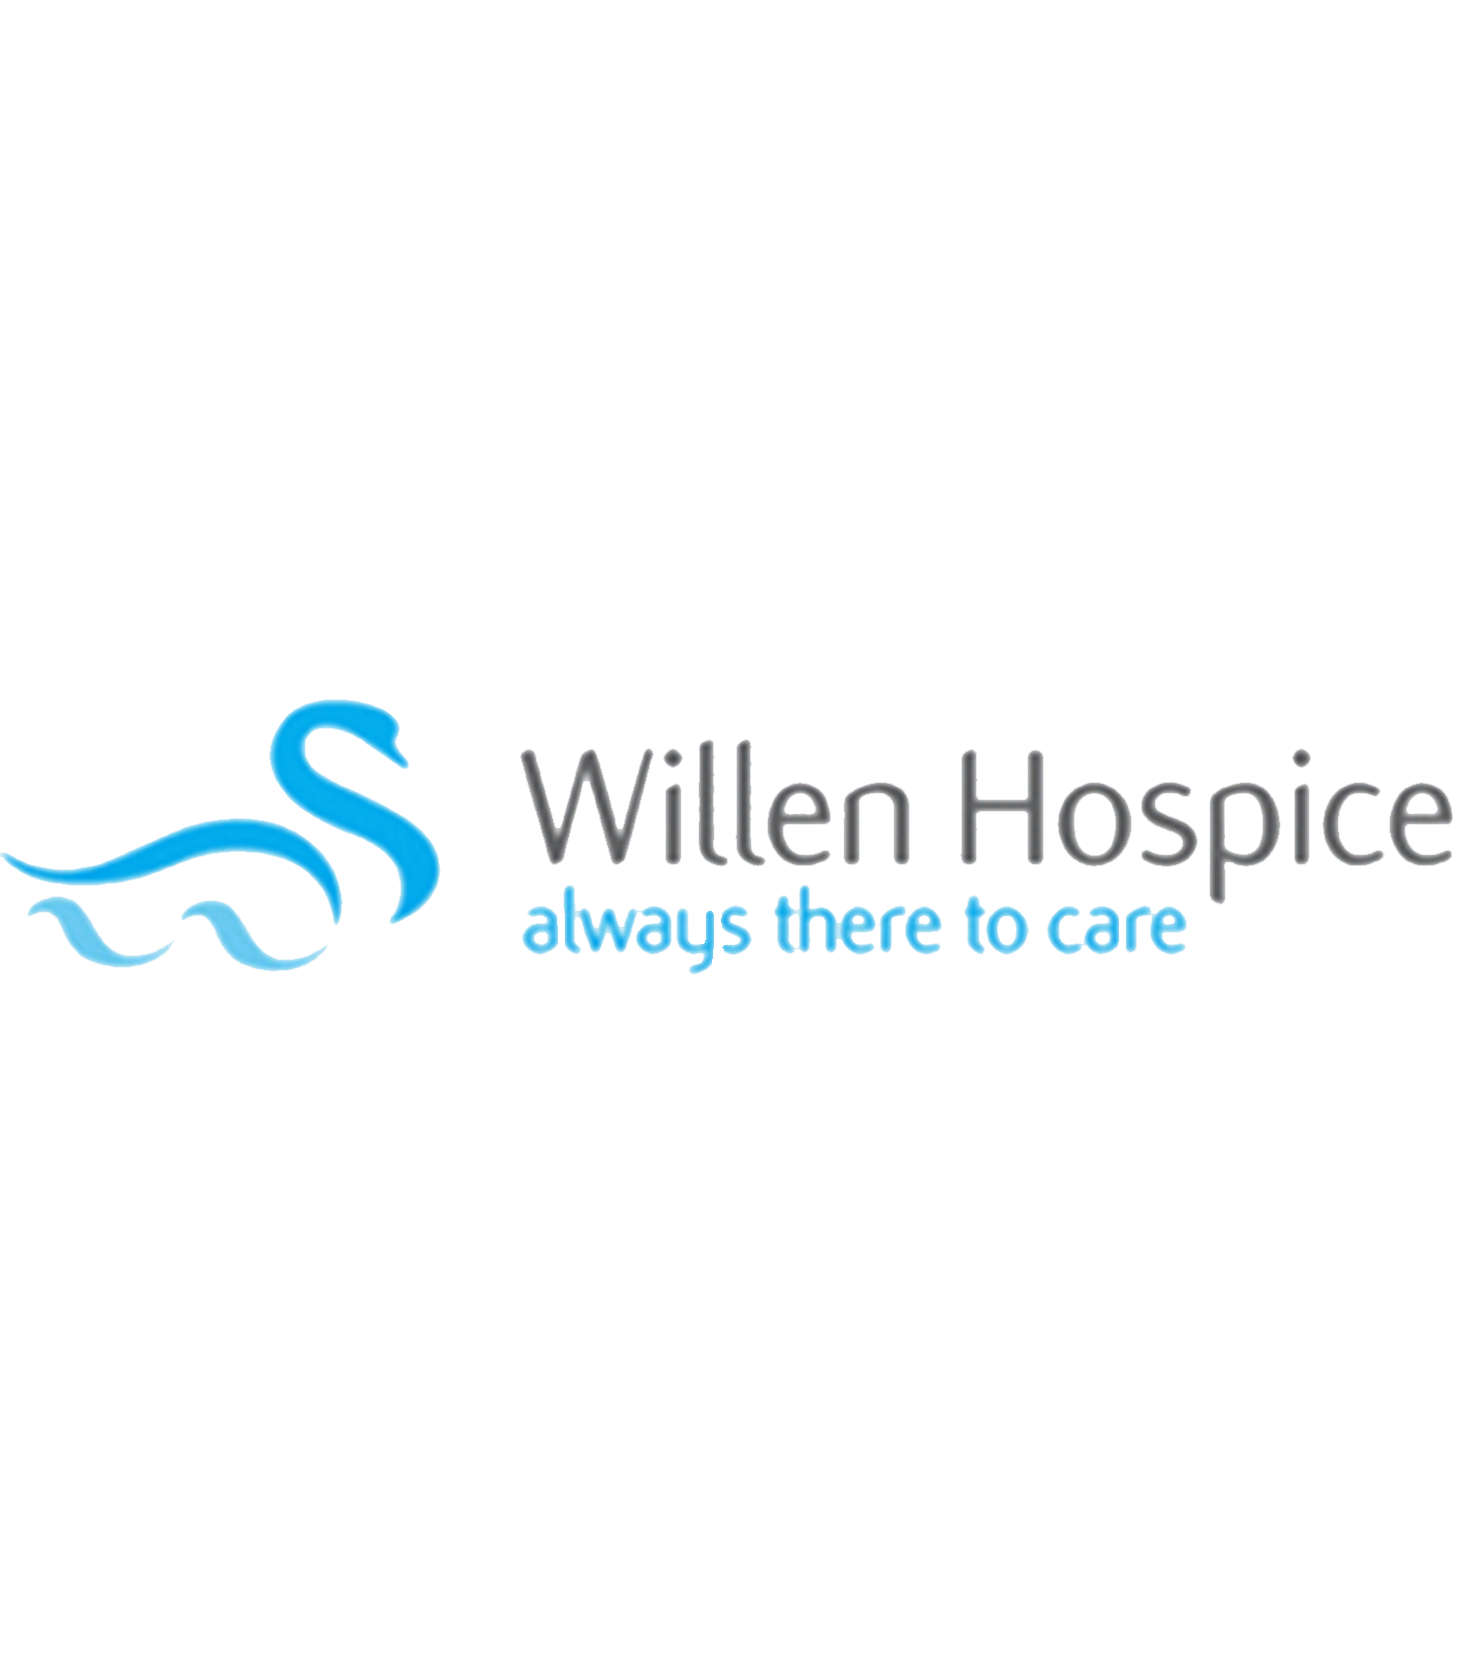 Willen hospice logo